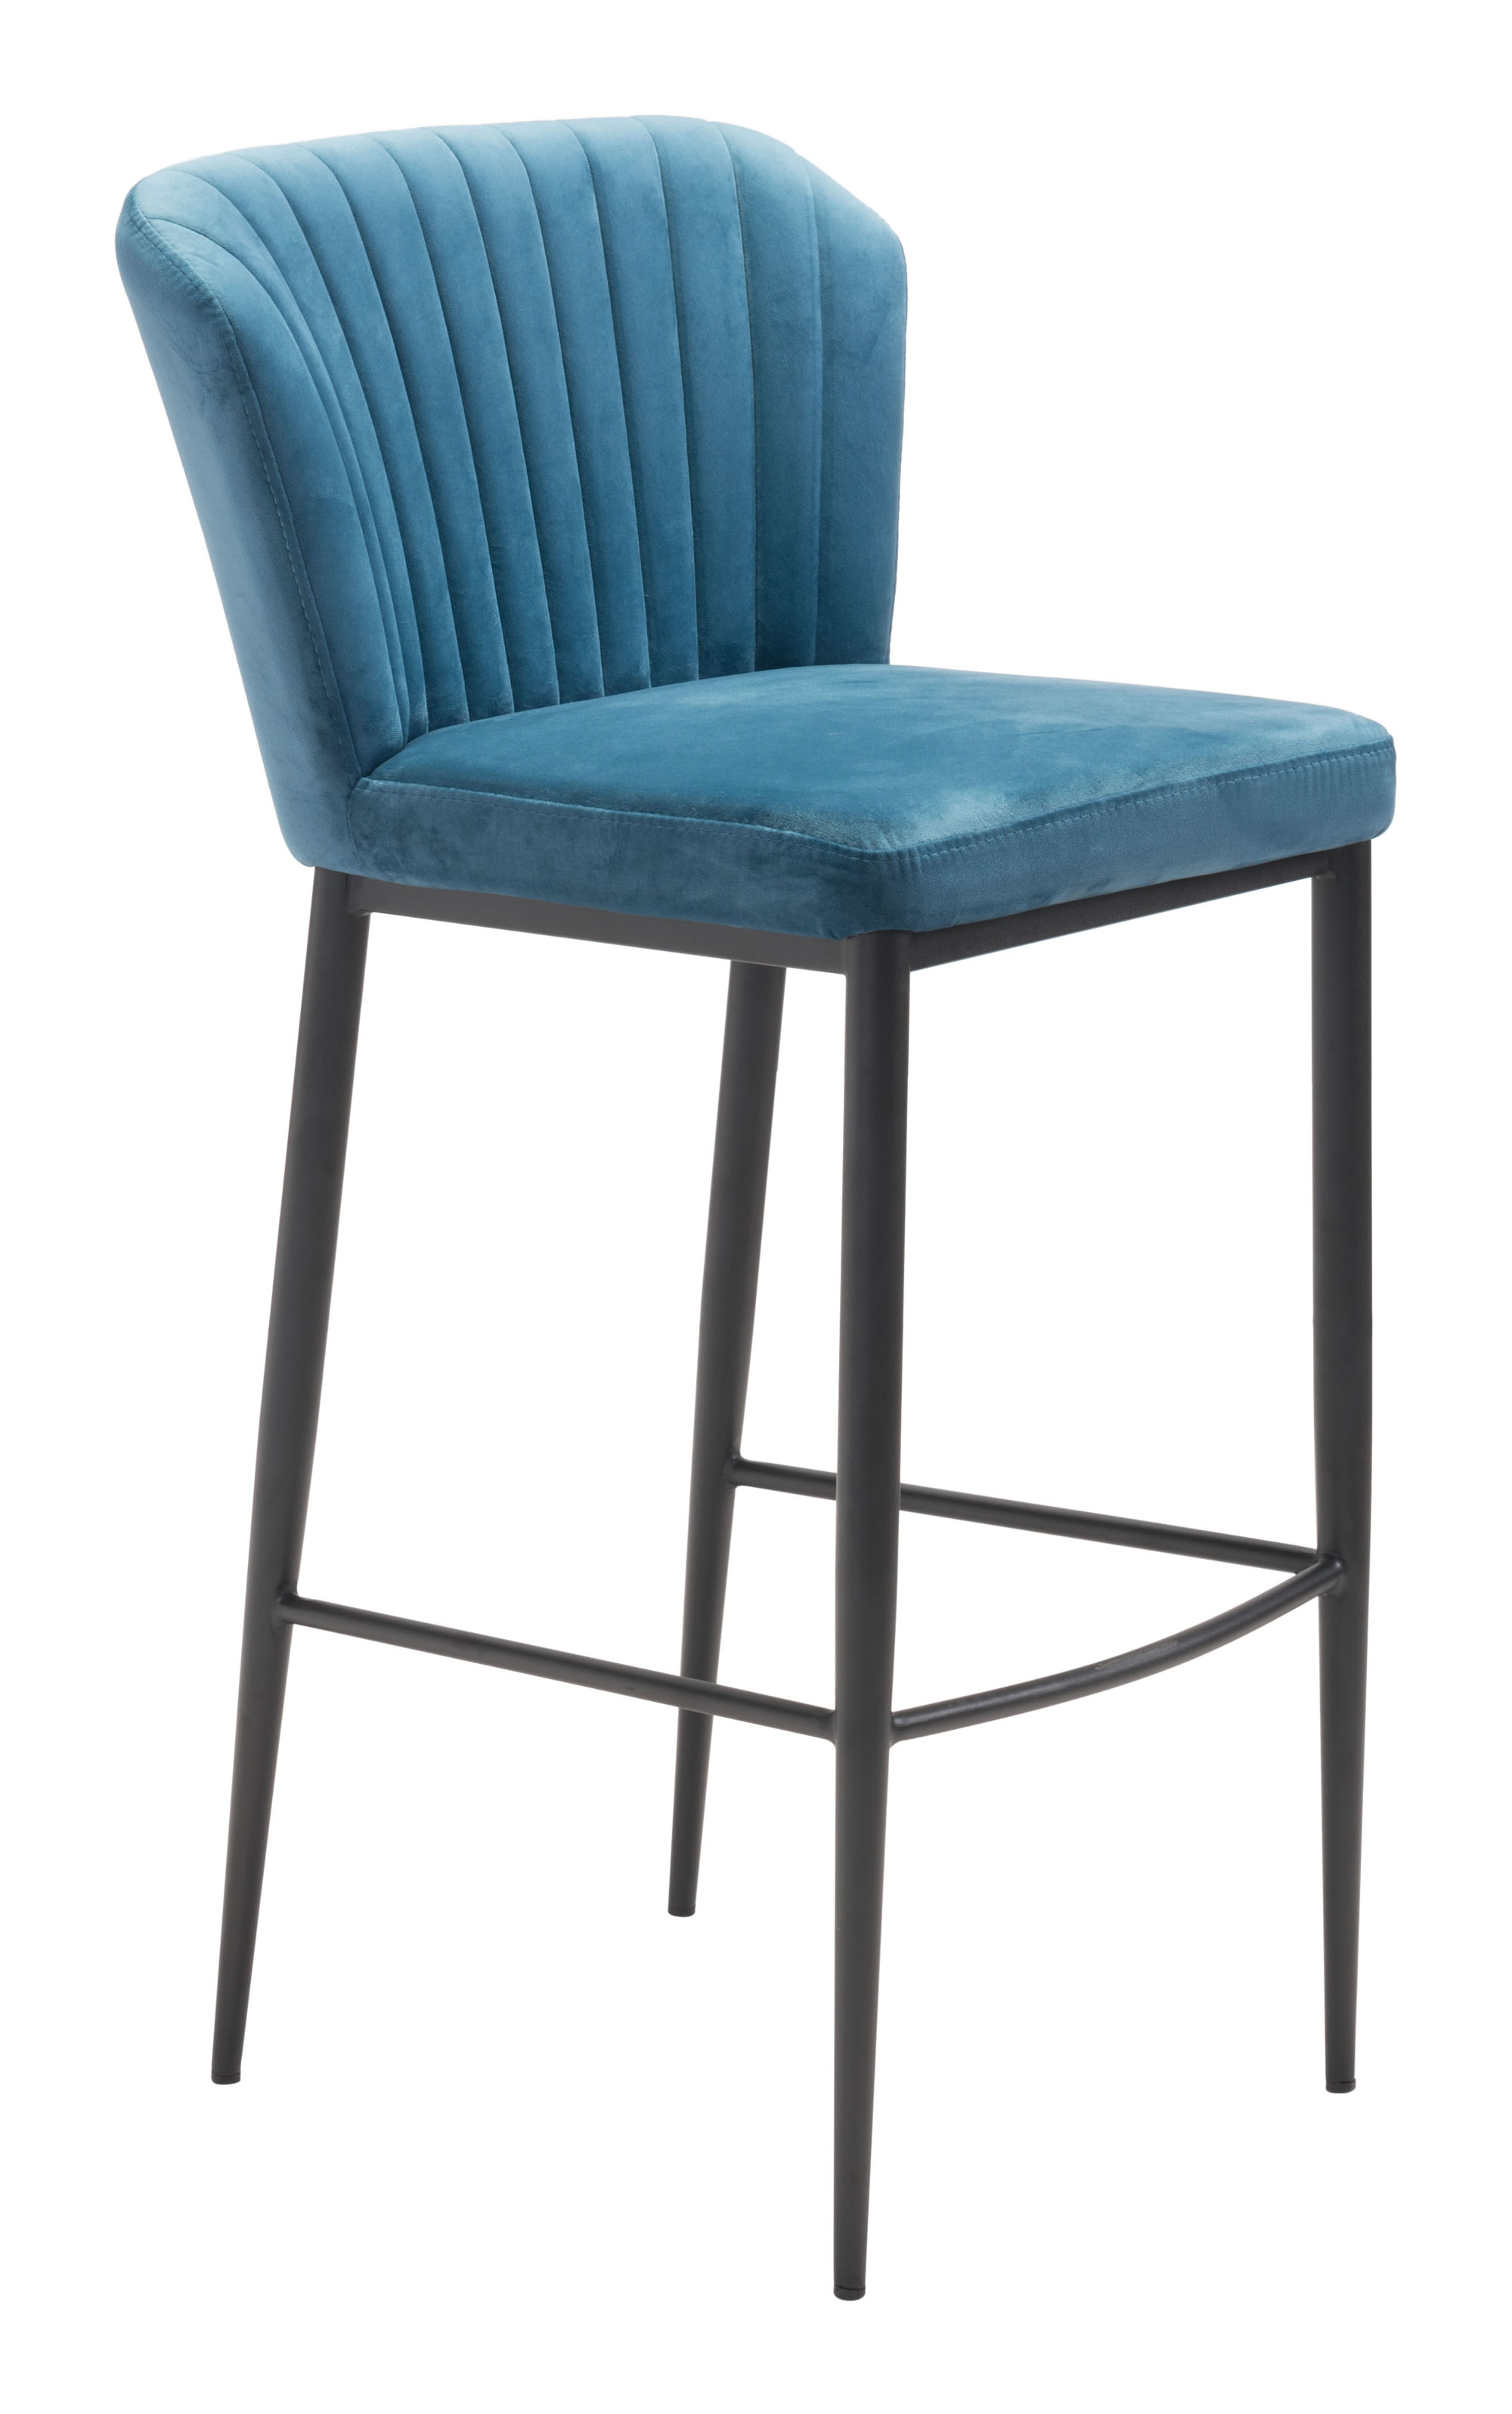 20.9" x 21.9" x 41.3" Blue, Velvet, Stainless Steel, Bar Chair - Set of 2